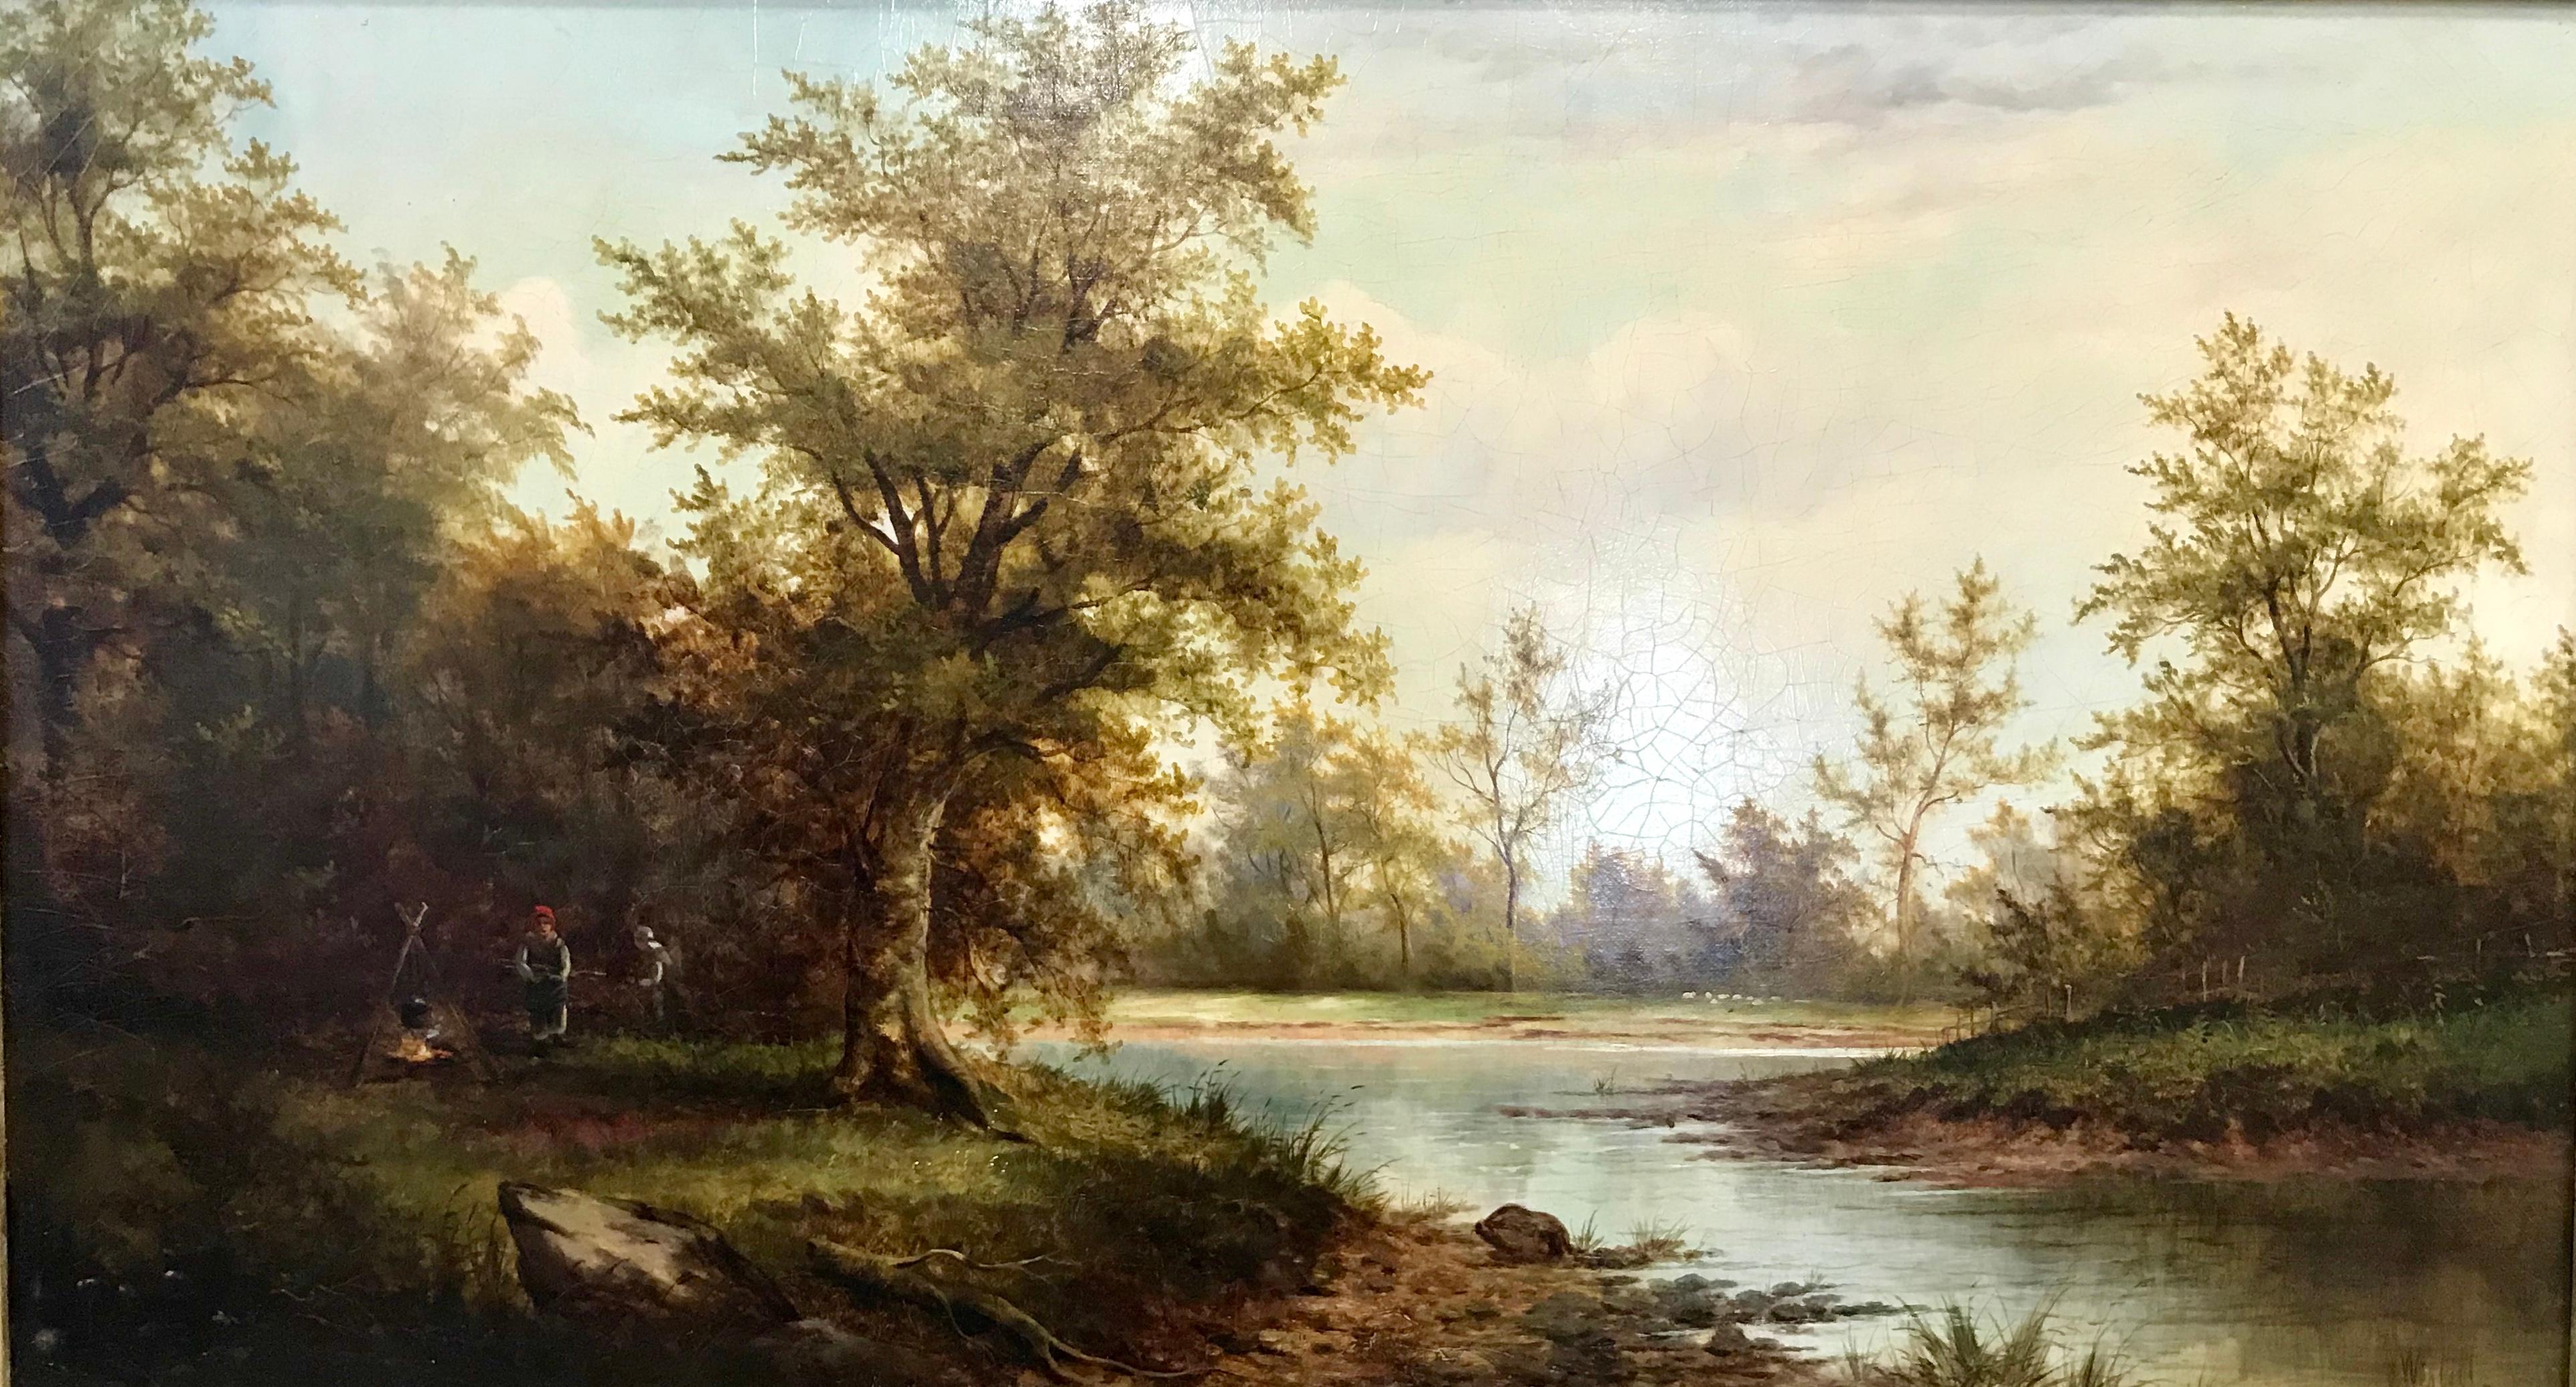 Eine malerische ländliche Szene aus dem 19. Jahrhundert von dem unter Denkmalschutz stehenden britischen Künstler John Westall (1823-1894).
Über diesen produktiven, autodidaktischen Landschaftsmaler ist wenig bekannt, da er sich oft zurückgezogen